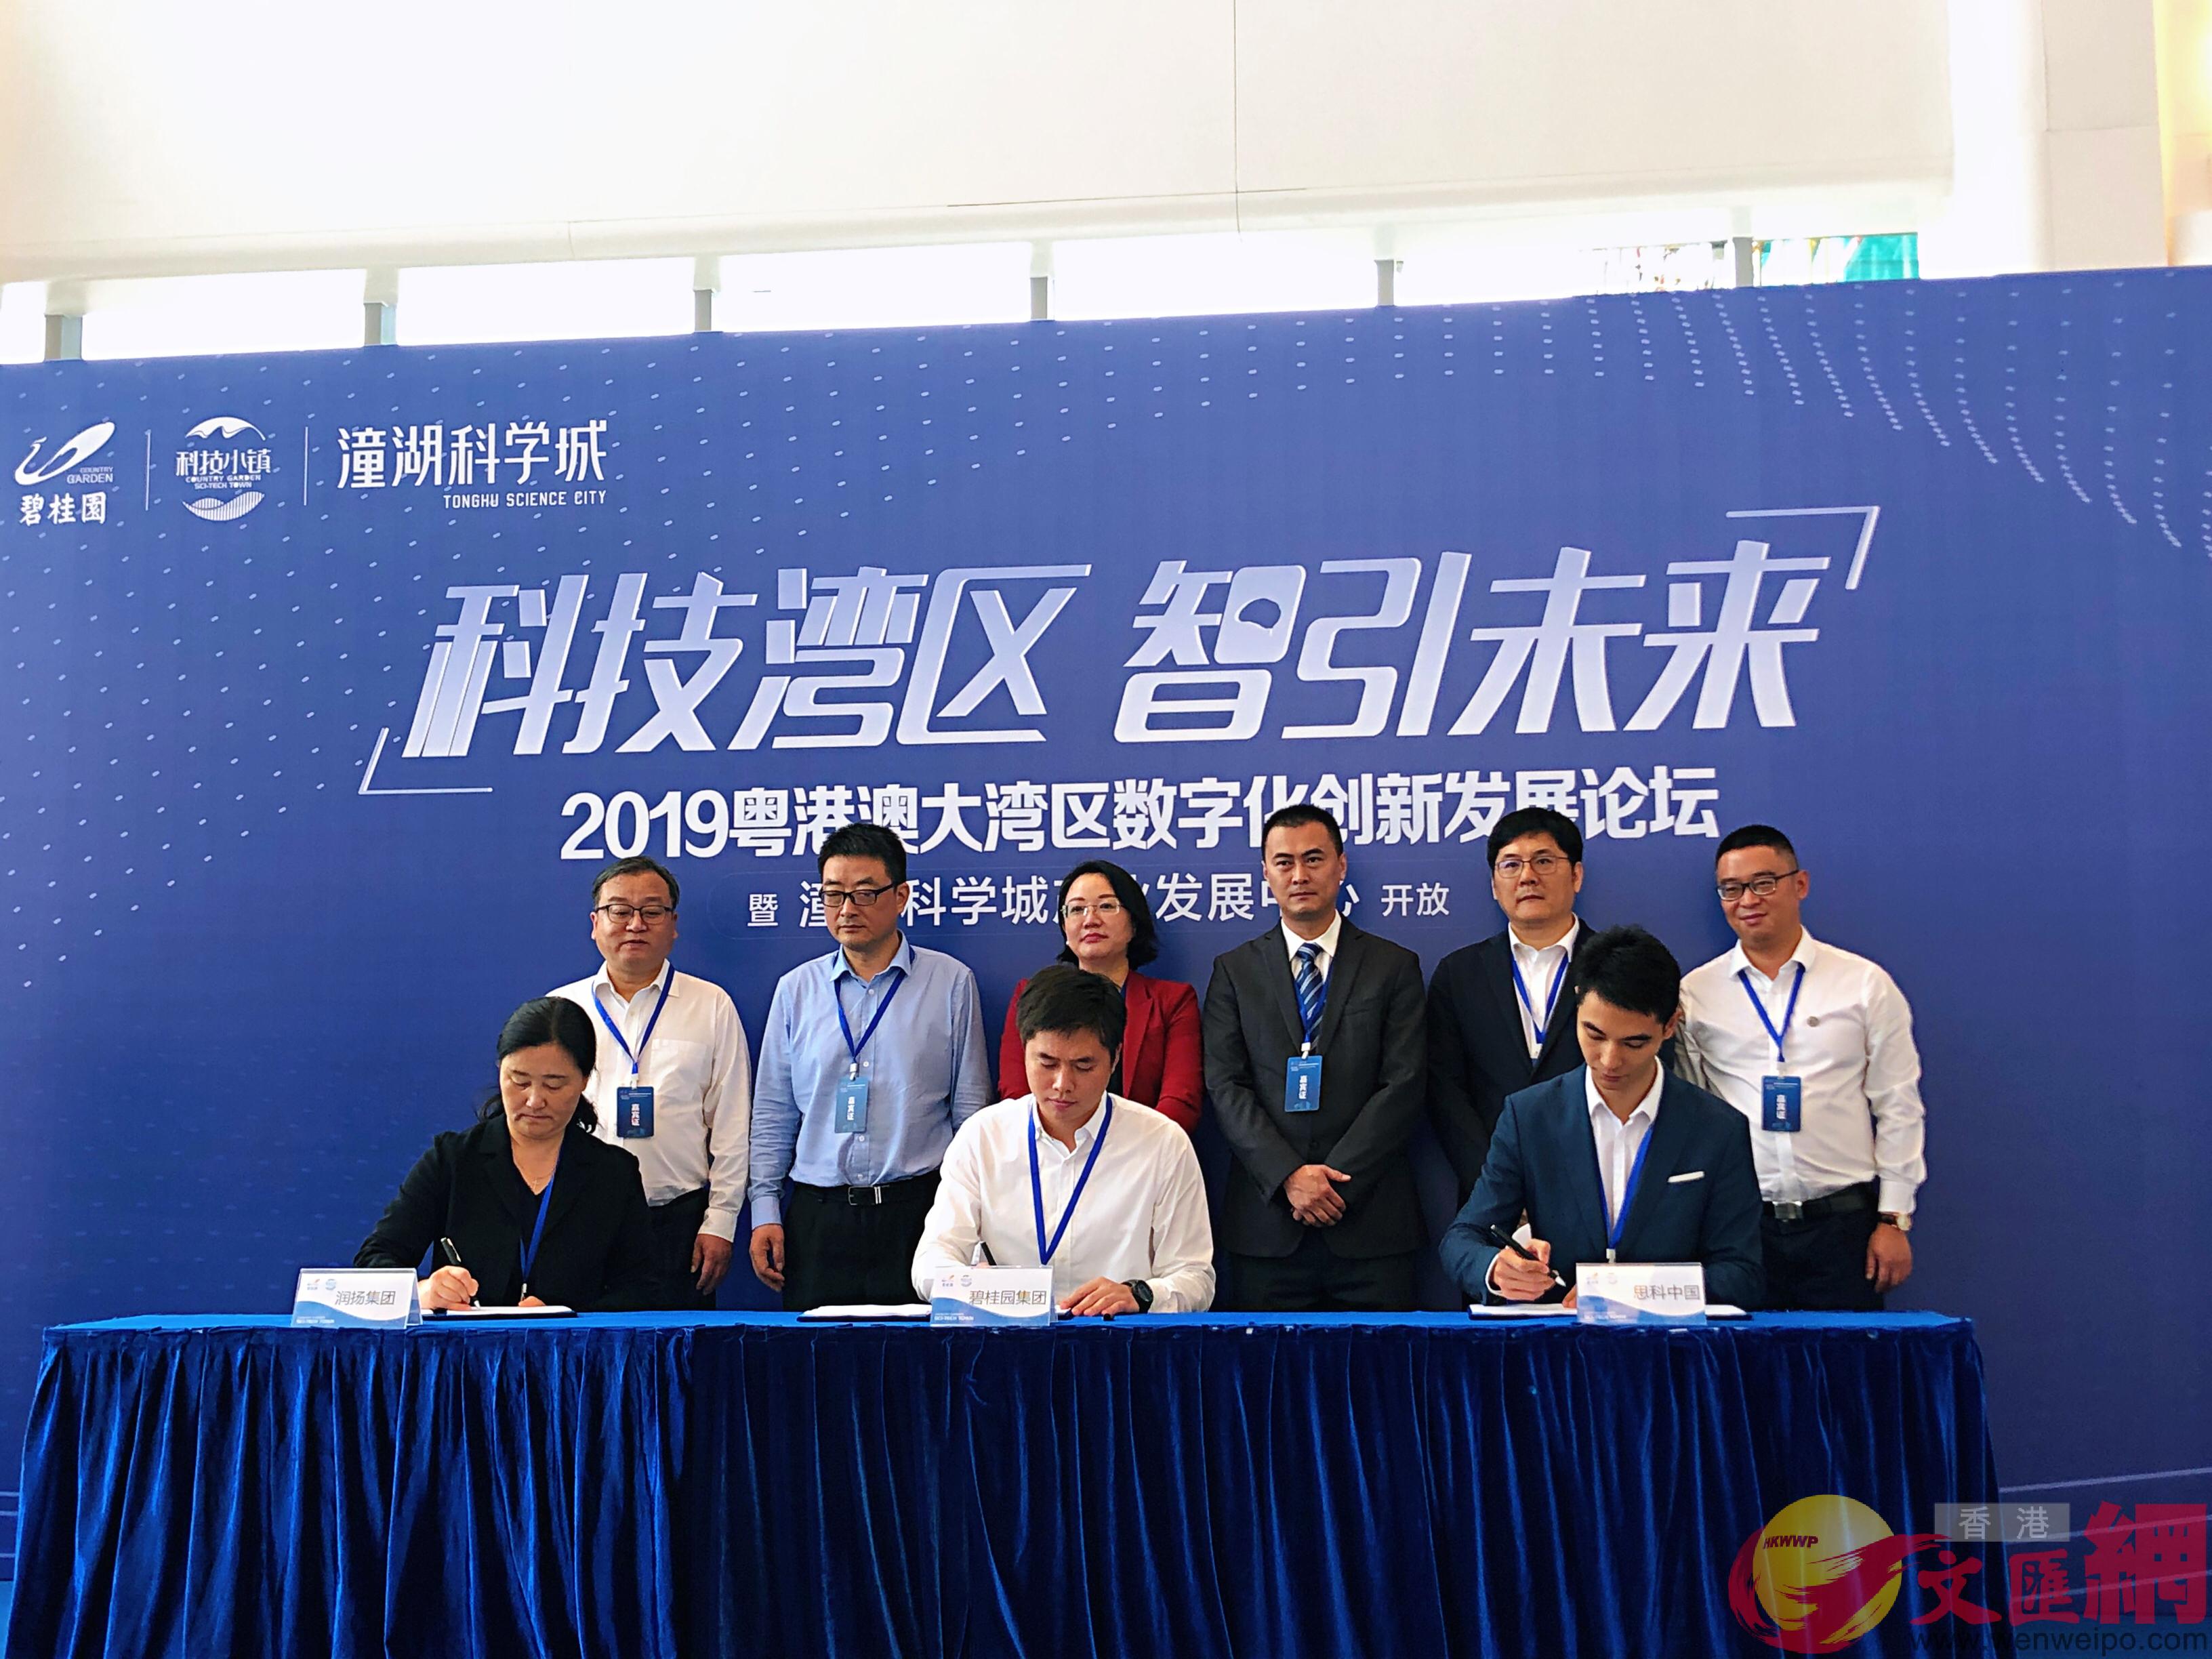 總投資10億元的u潼湖大數據產業園v在惠州市潼湖科技小鎮正式簽約落地C]方俊明攝^